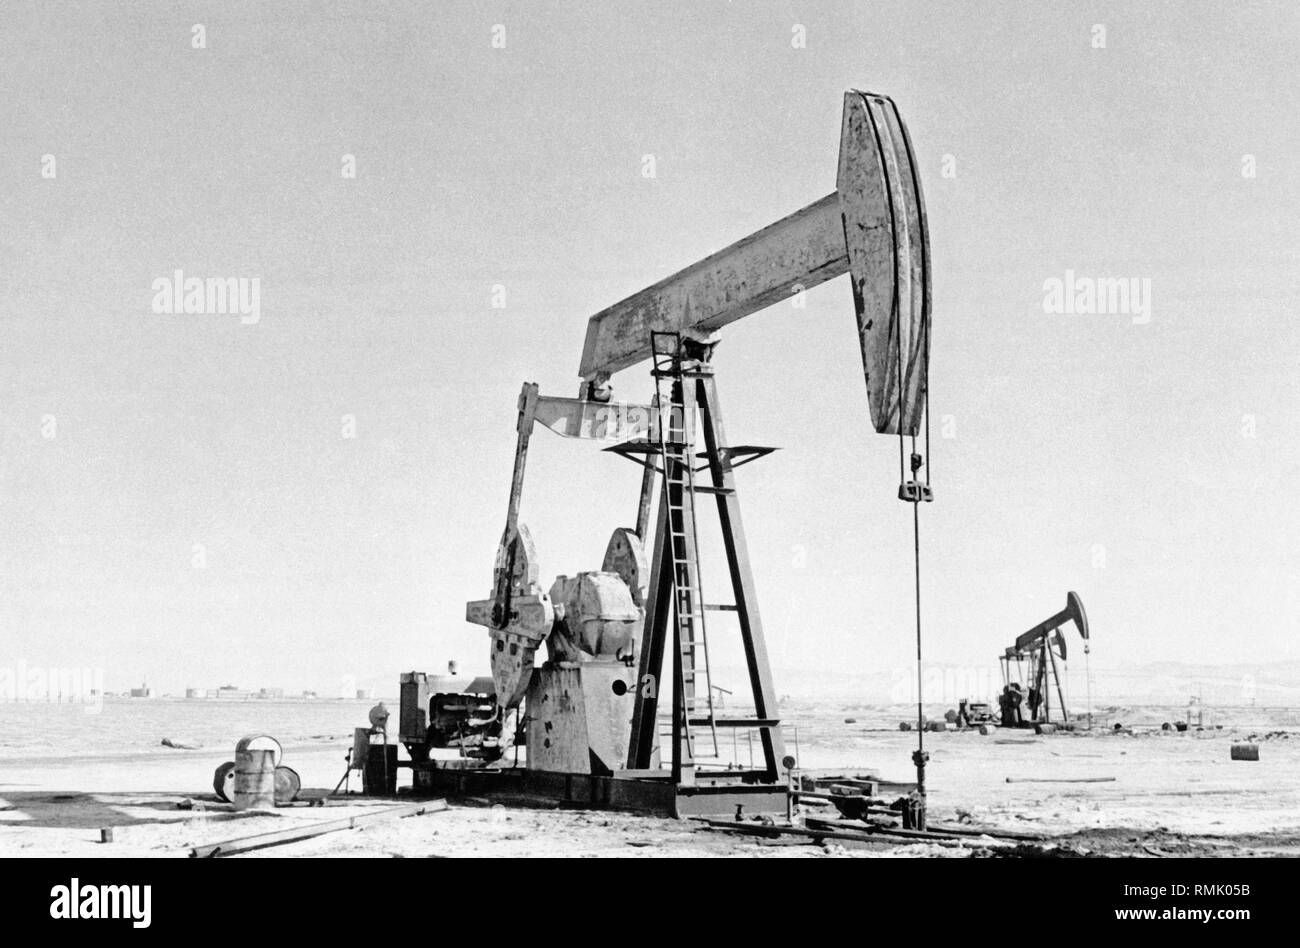 La pompe à pétrole tête de cheval – GeoGebra